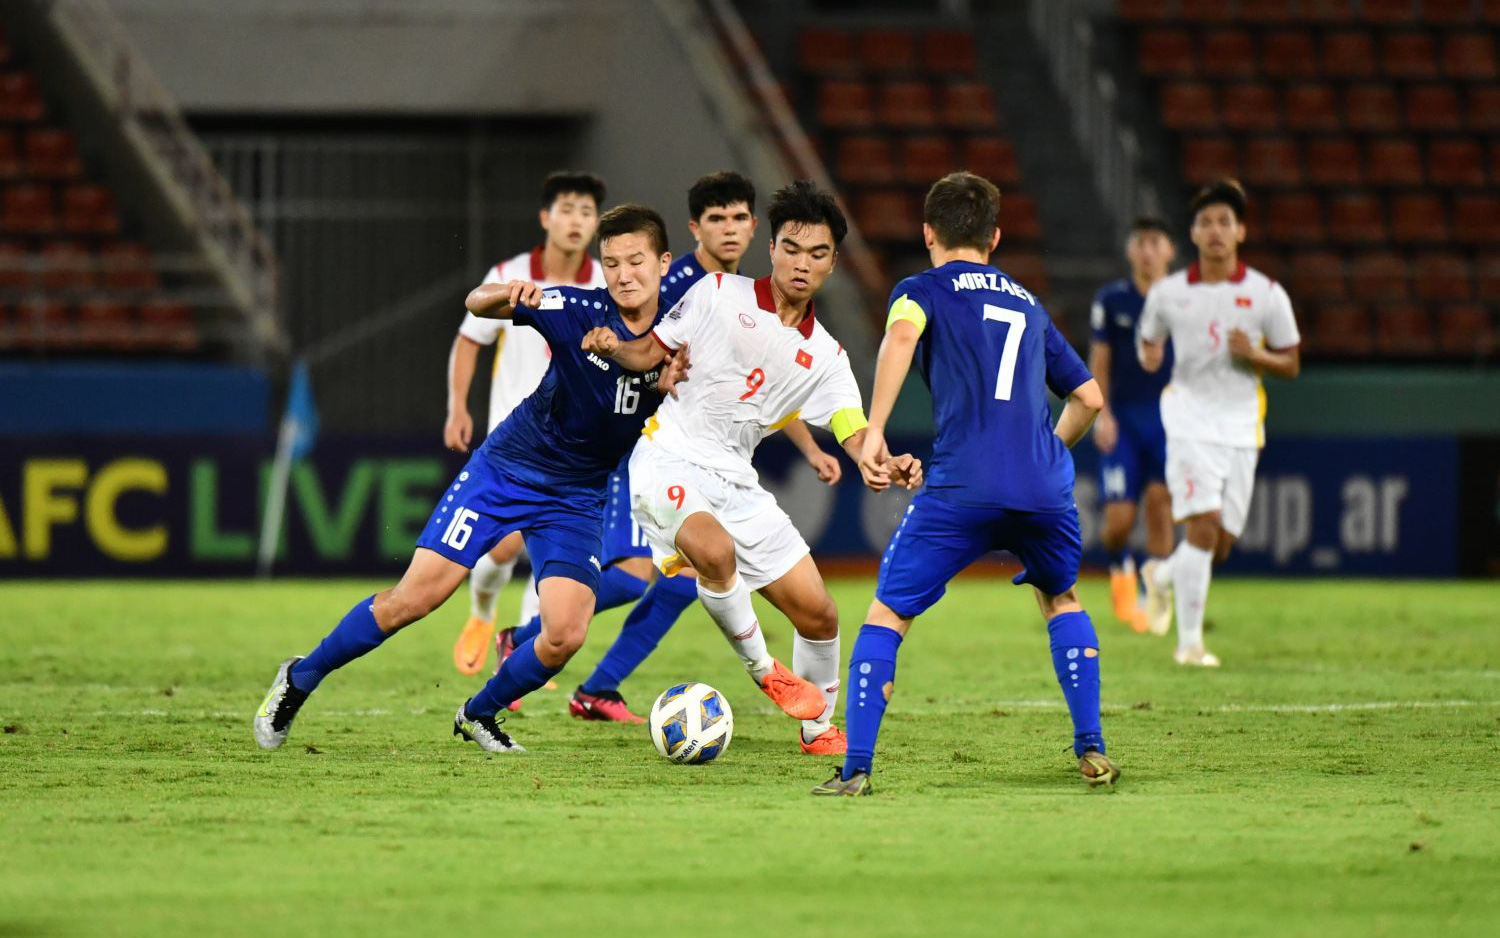 U17 Việt Nam bị loại khỏi Giải U17 châu Á 2023